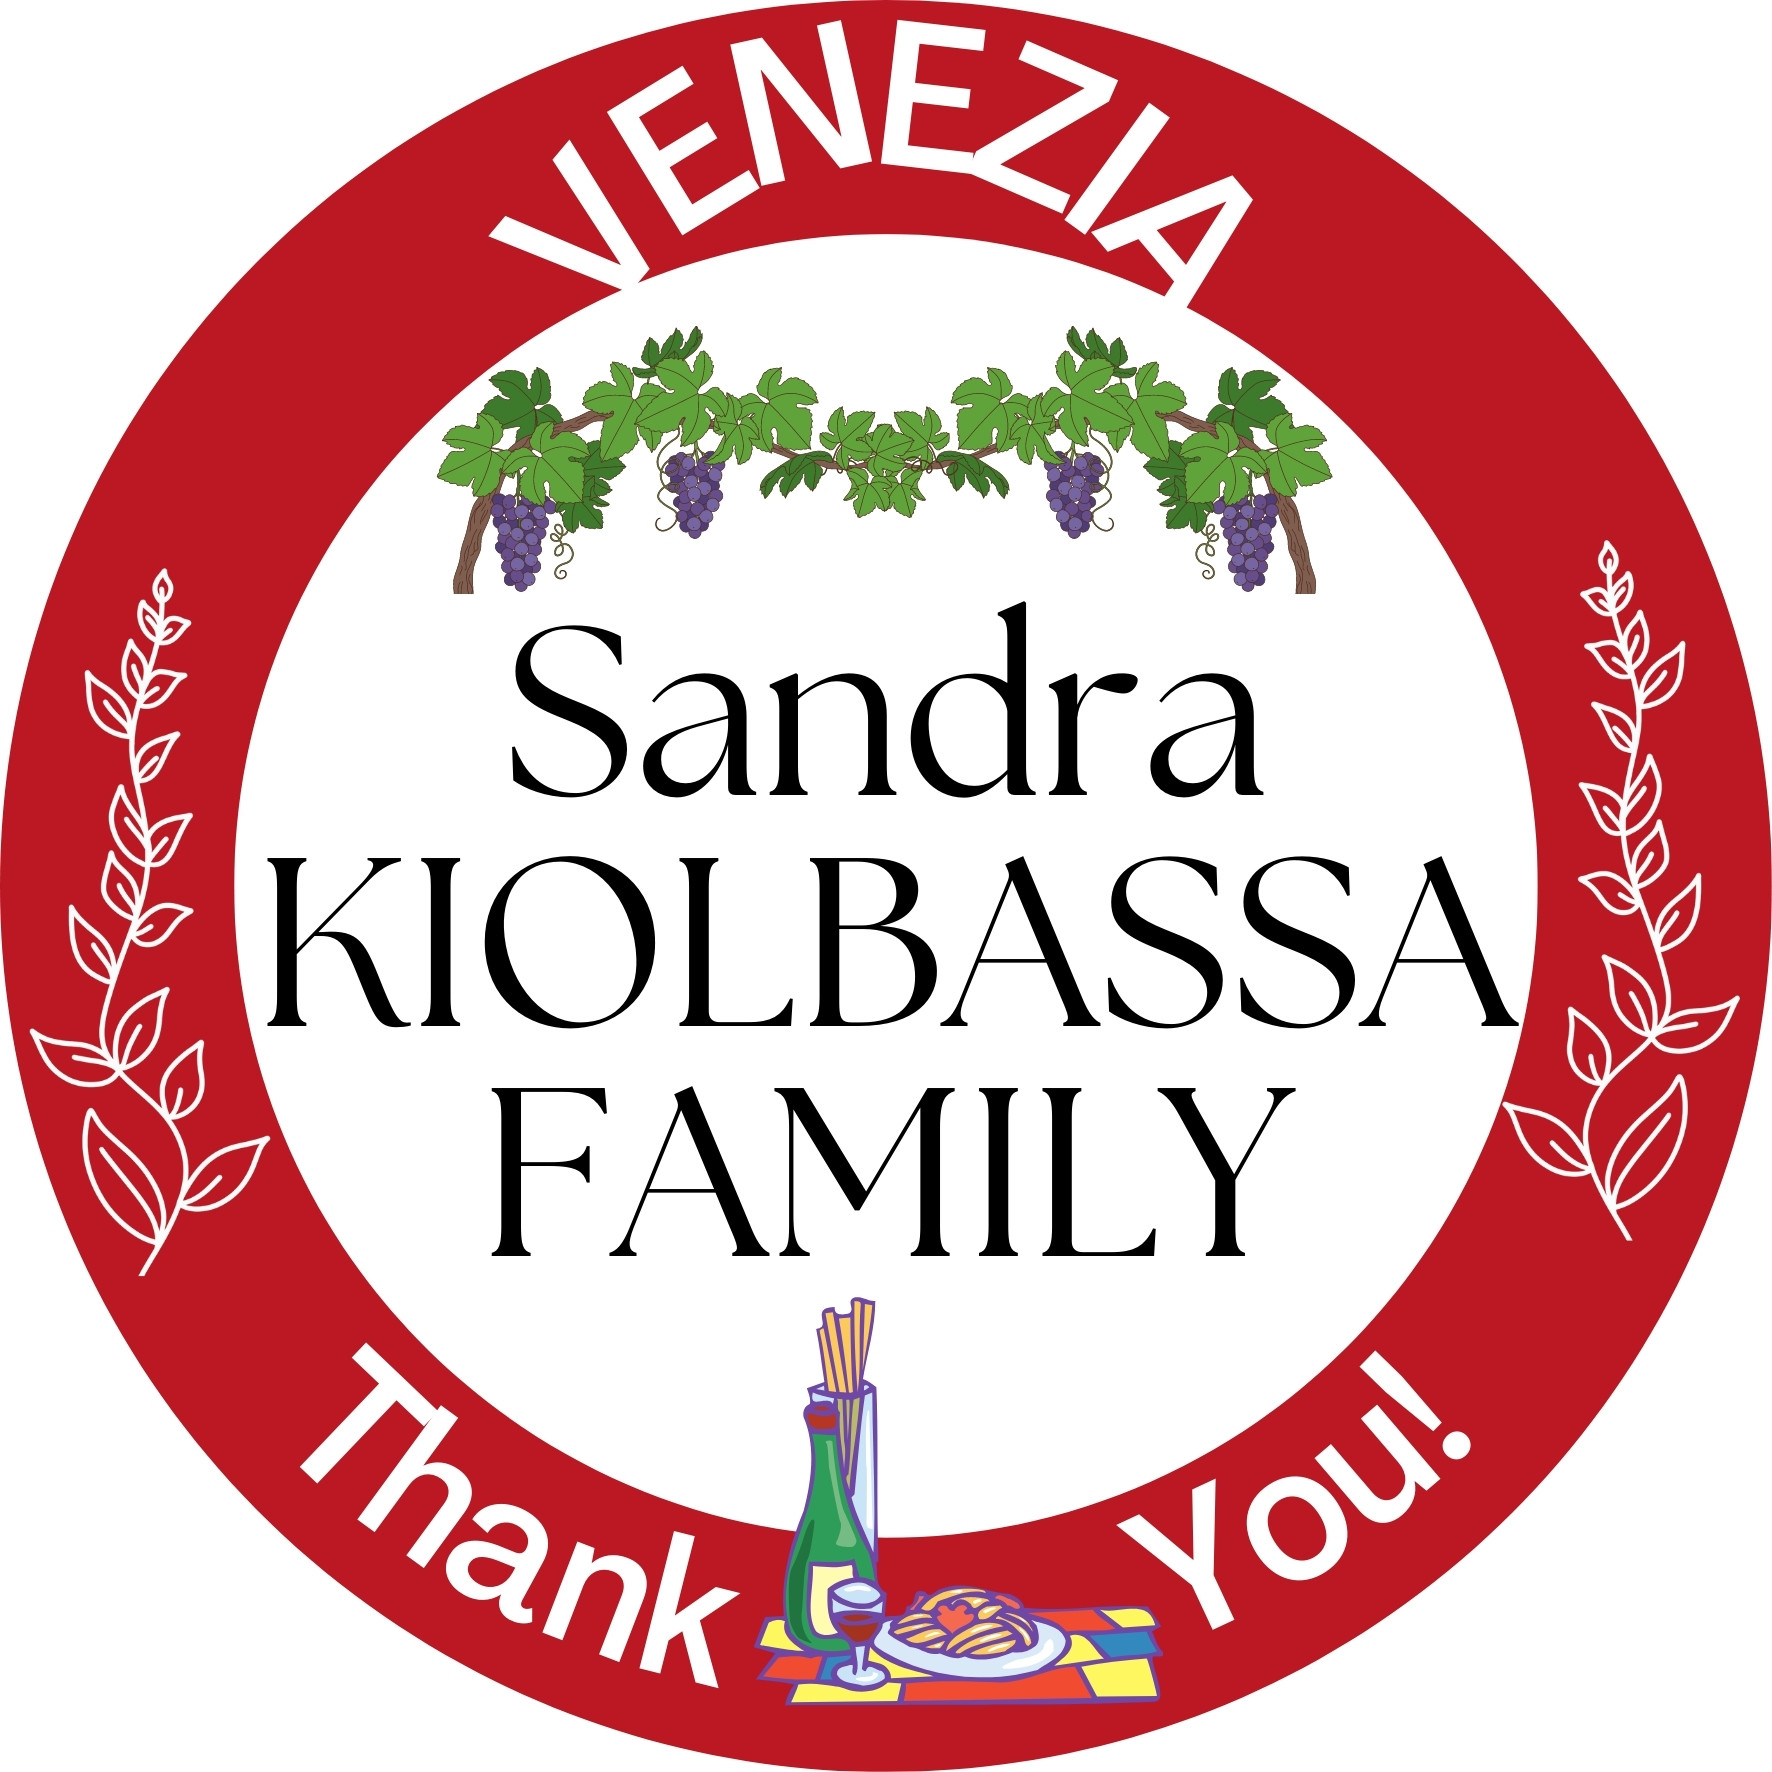 Sandra Kiolbassa Family Venezia